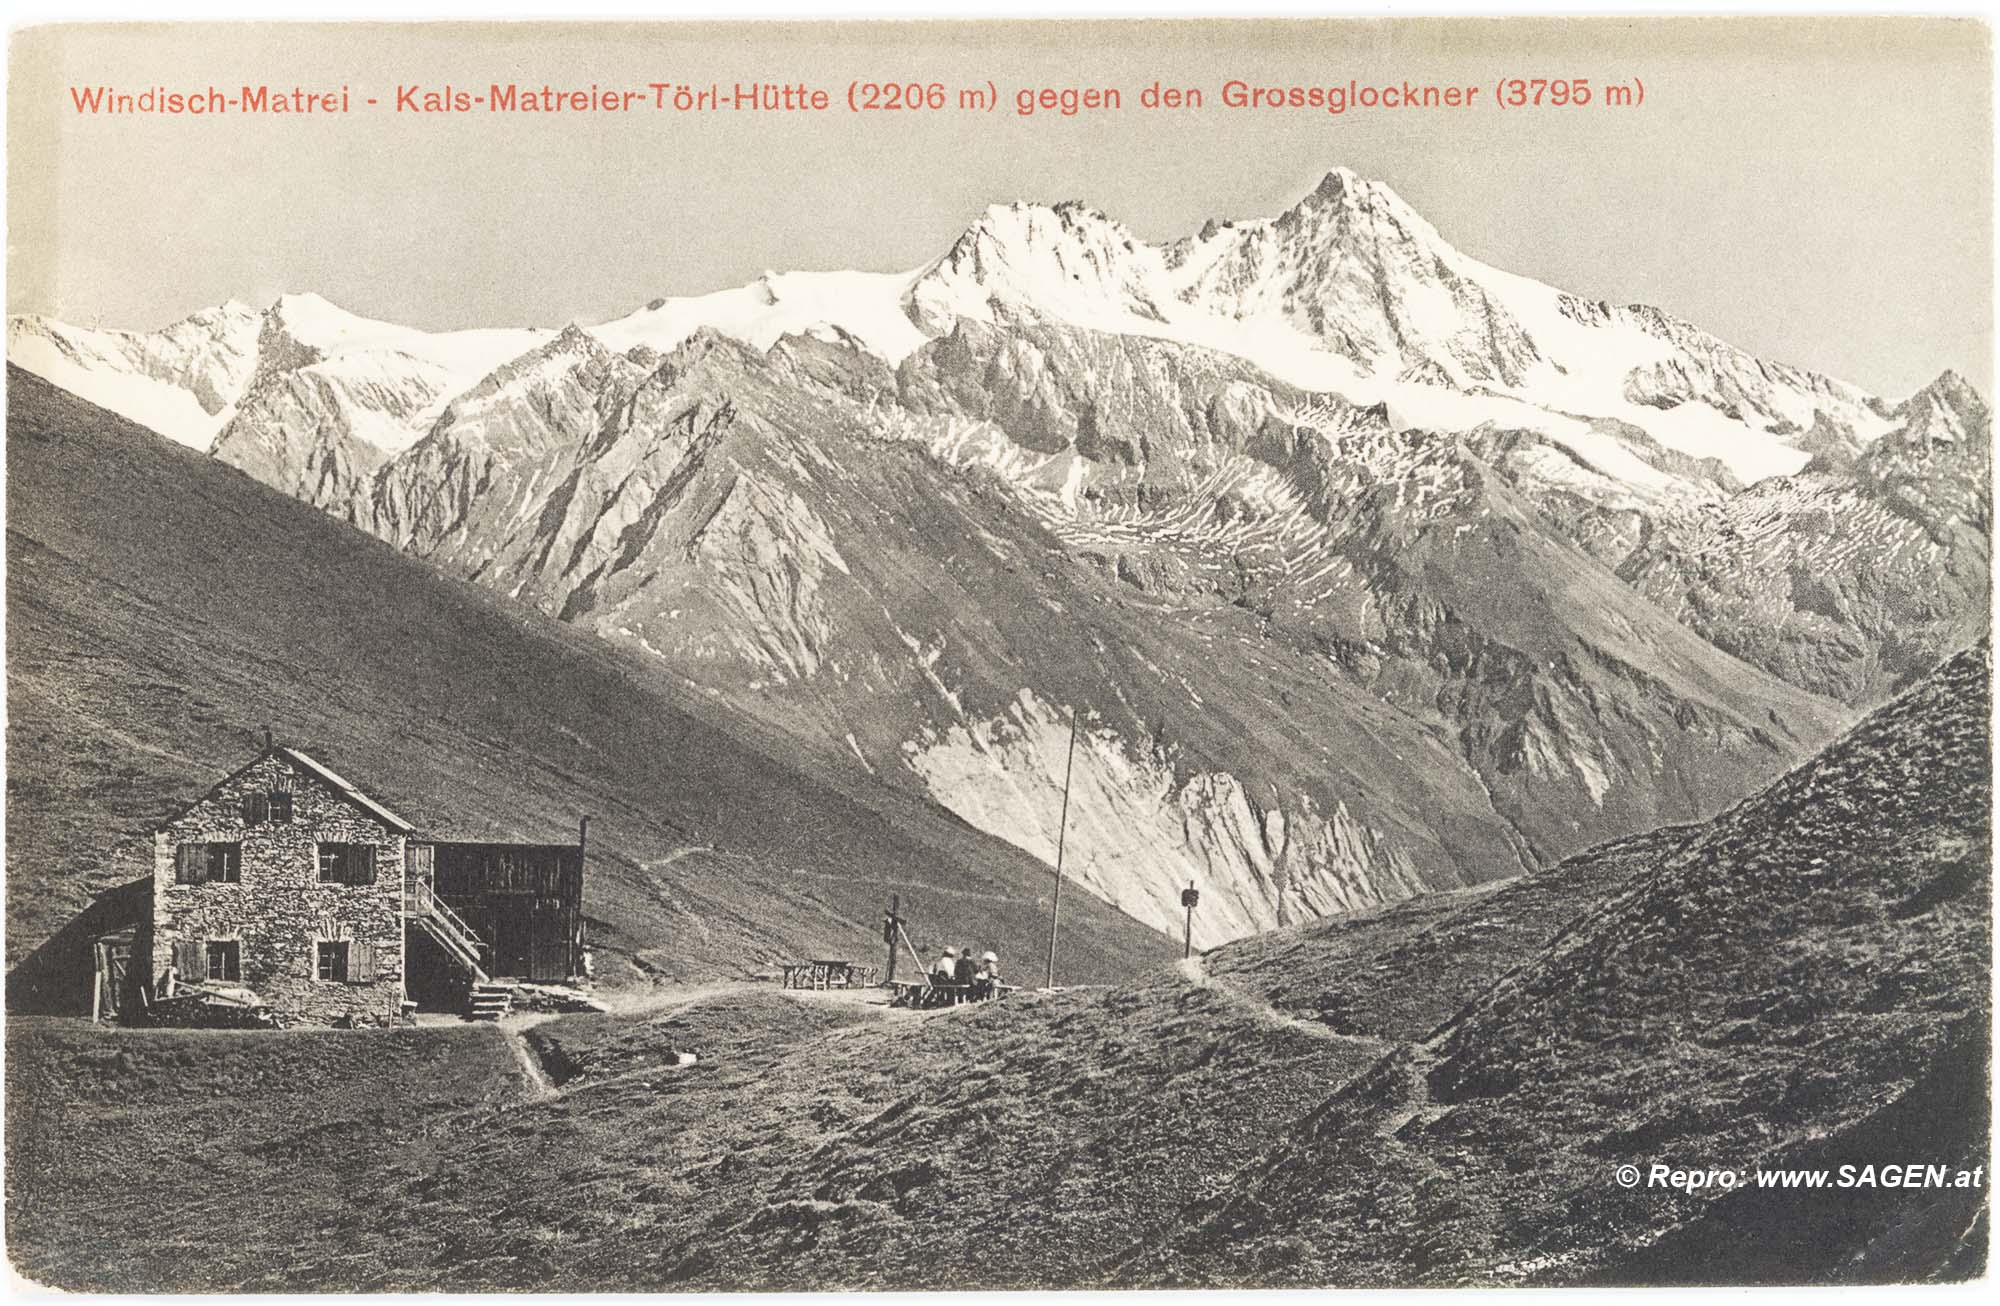 Matrei in Osttirol - Kals-Matreier-Törl-Haus gegen den Großglockner